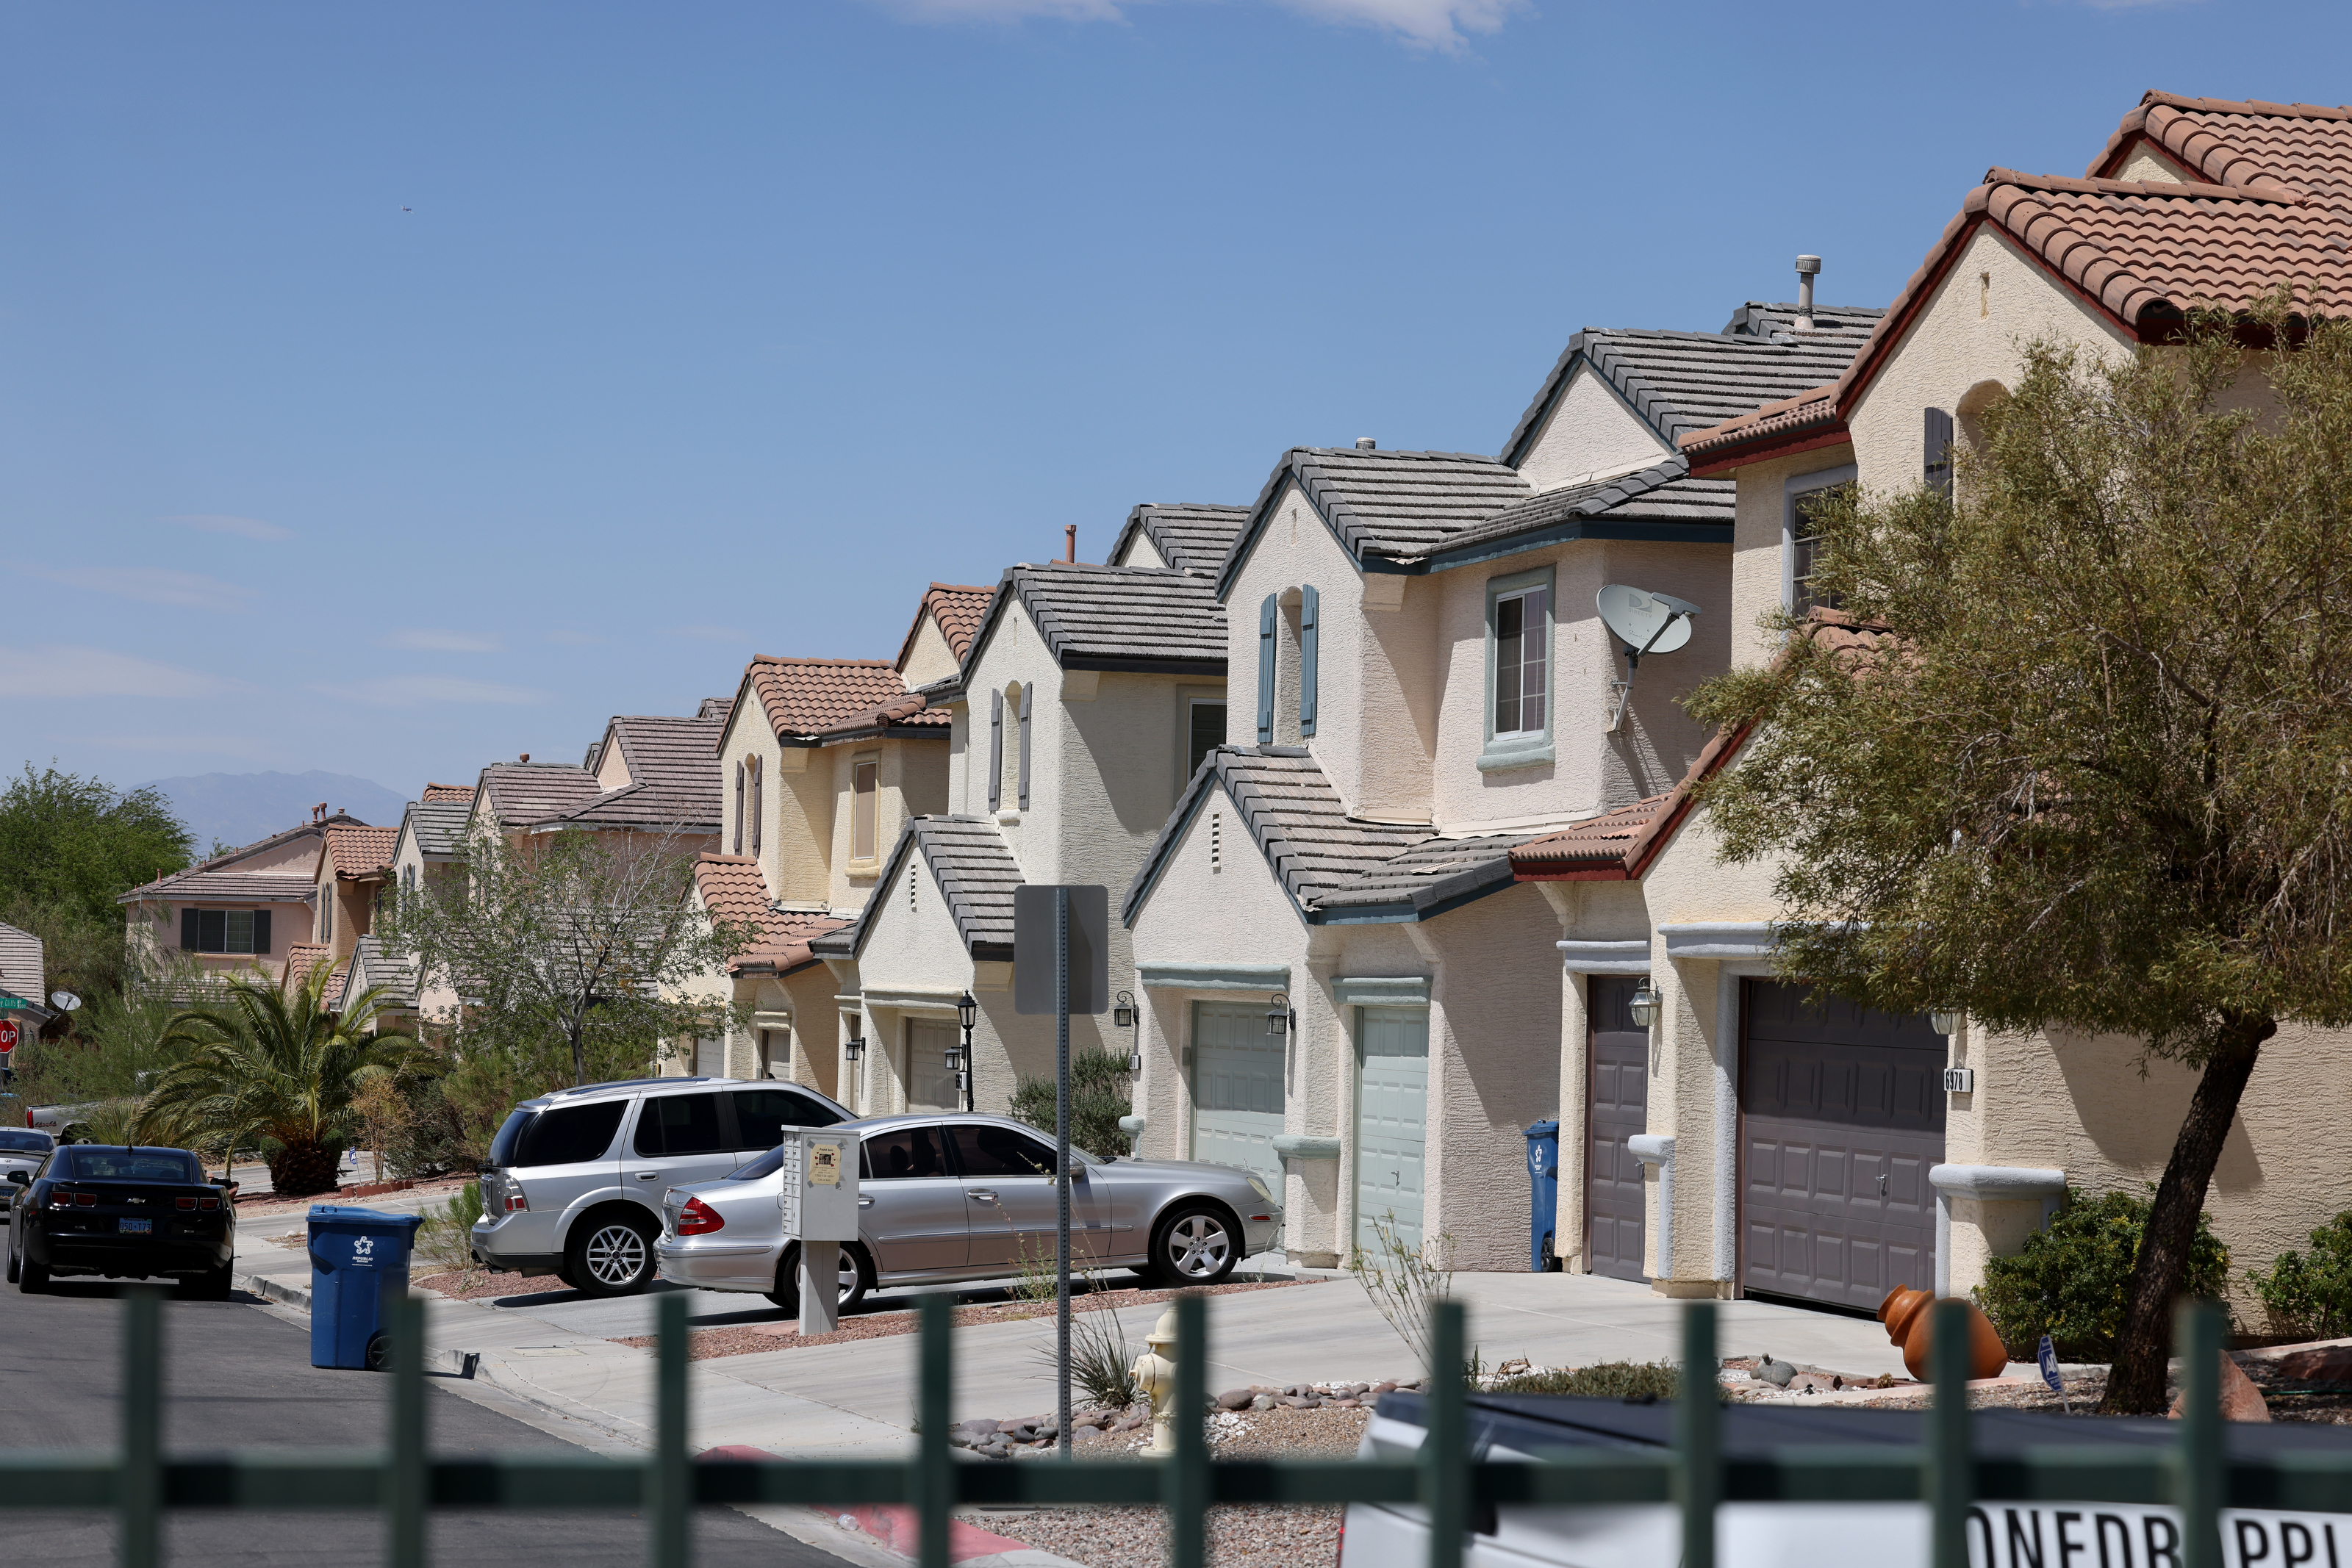 Penjualan rumah di Las Vegas turun karena tingkat hipotek naik